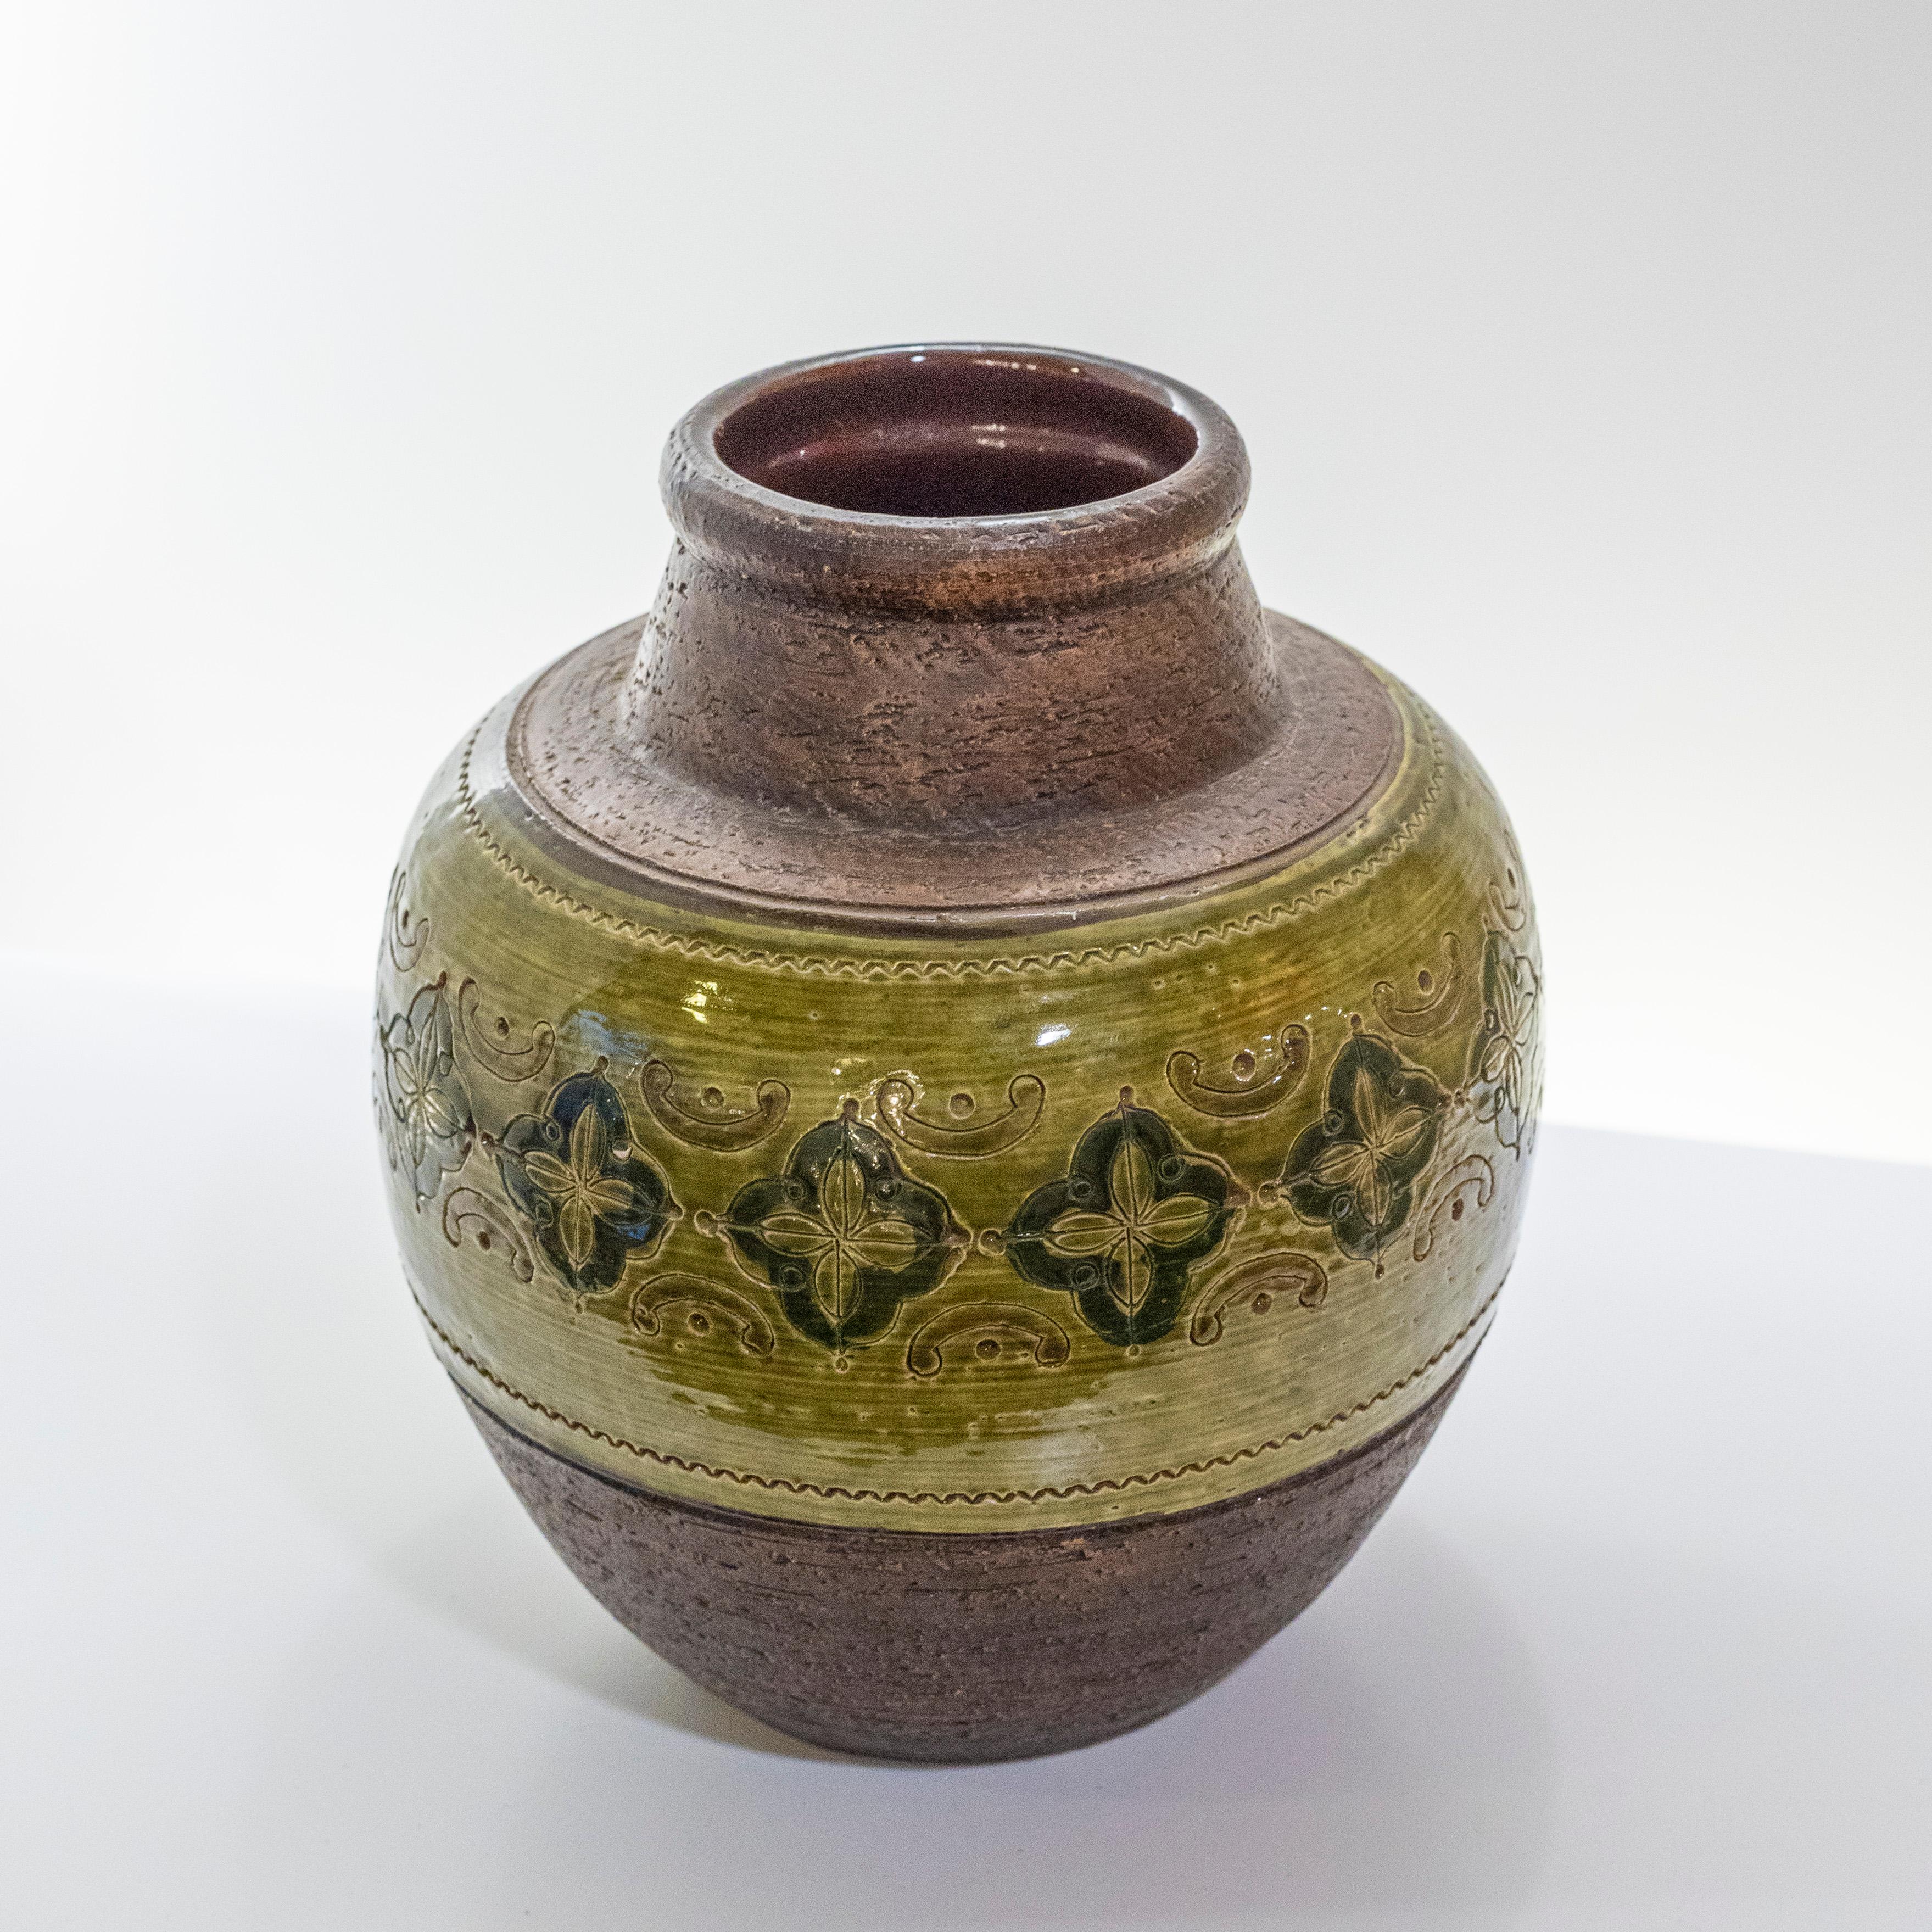 Keramikvase der Collection Arabesque von Aldo Londi aus Bitossi,  MonteLupo Firenze Italien, 1960er Jahre.